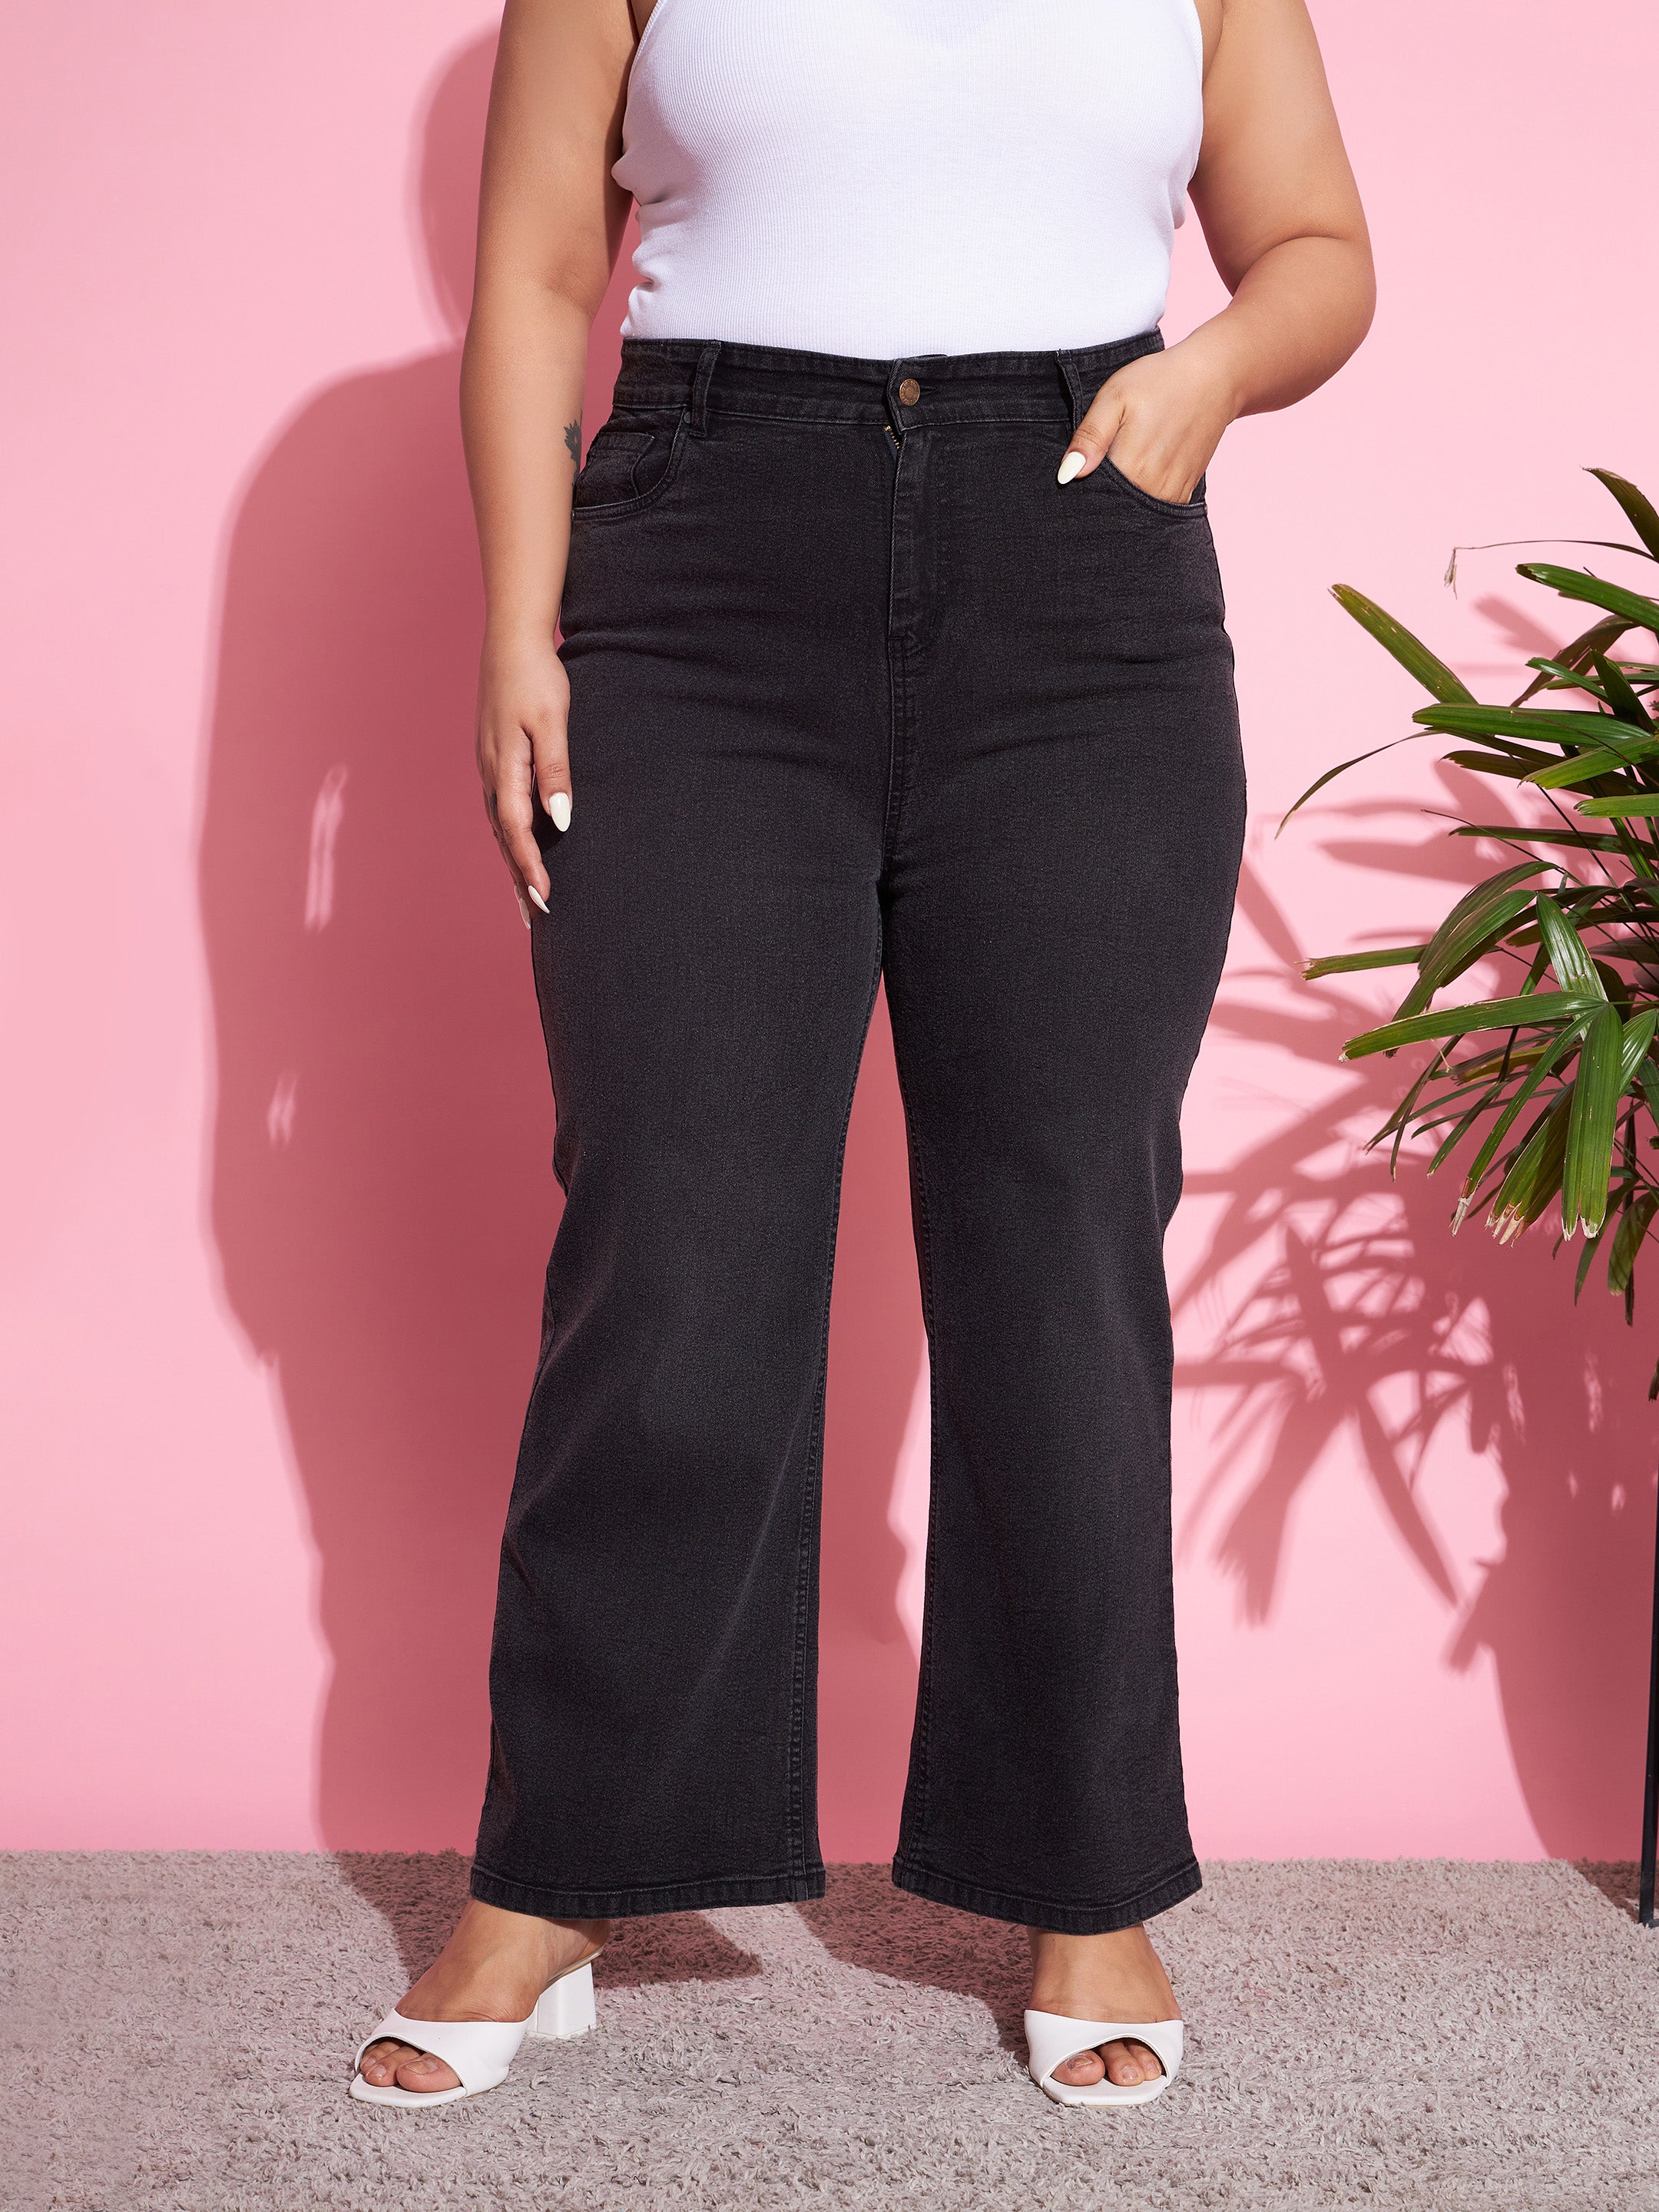 Women's Black Acid Wash Denim Straight Jeans - SASSAFRAS